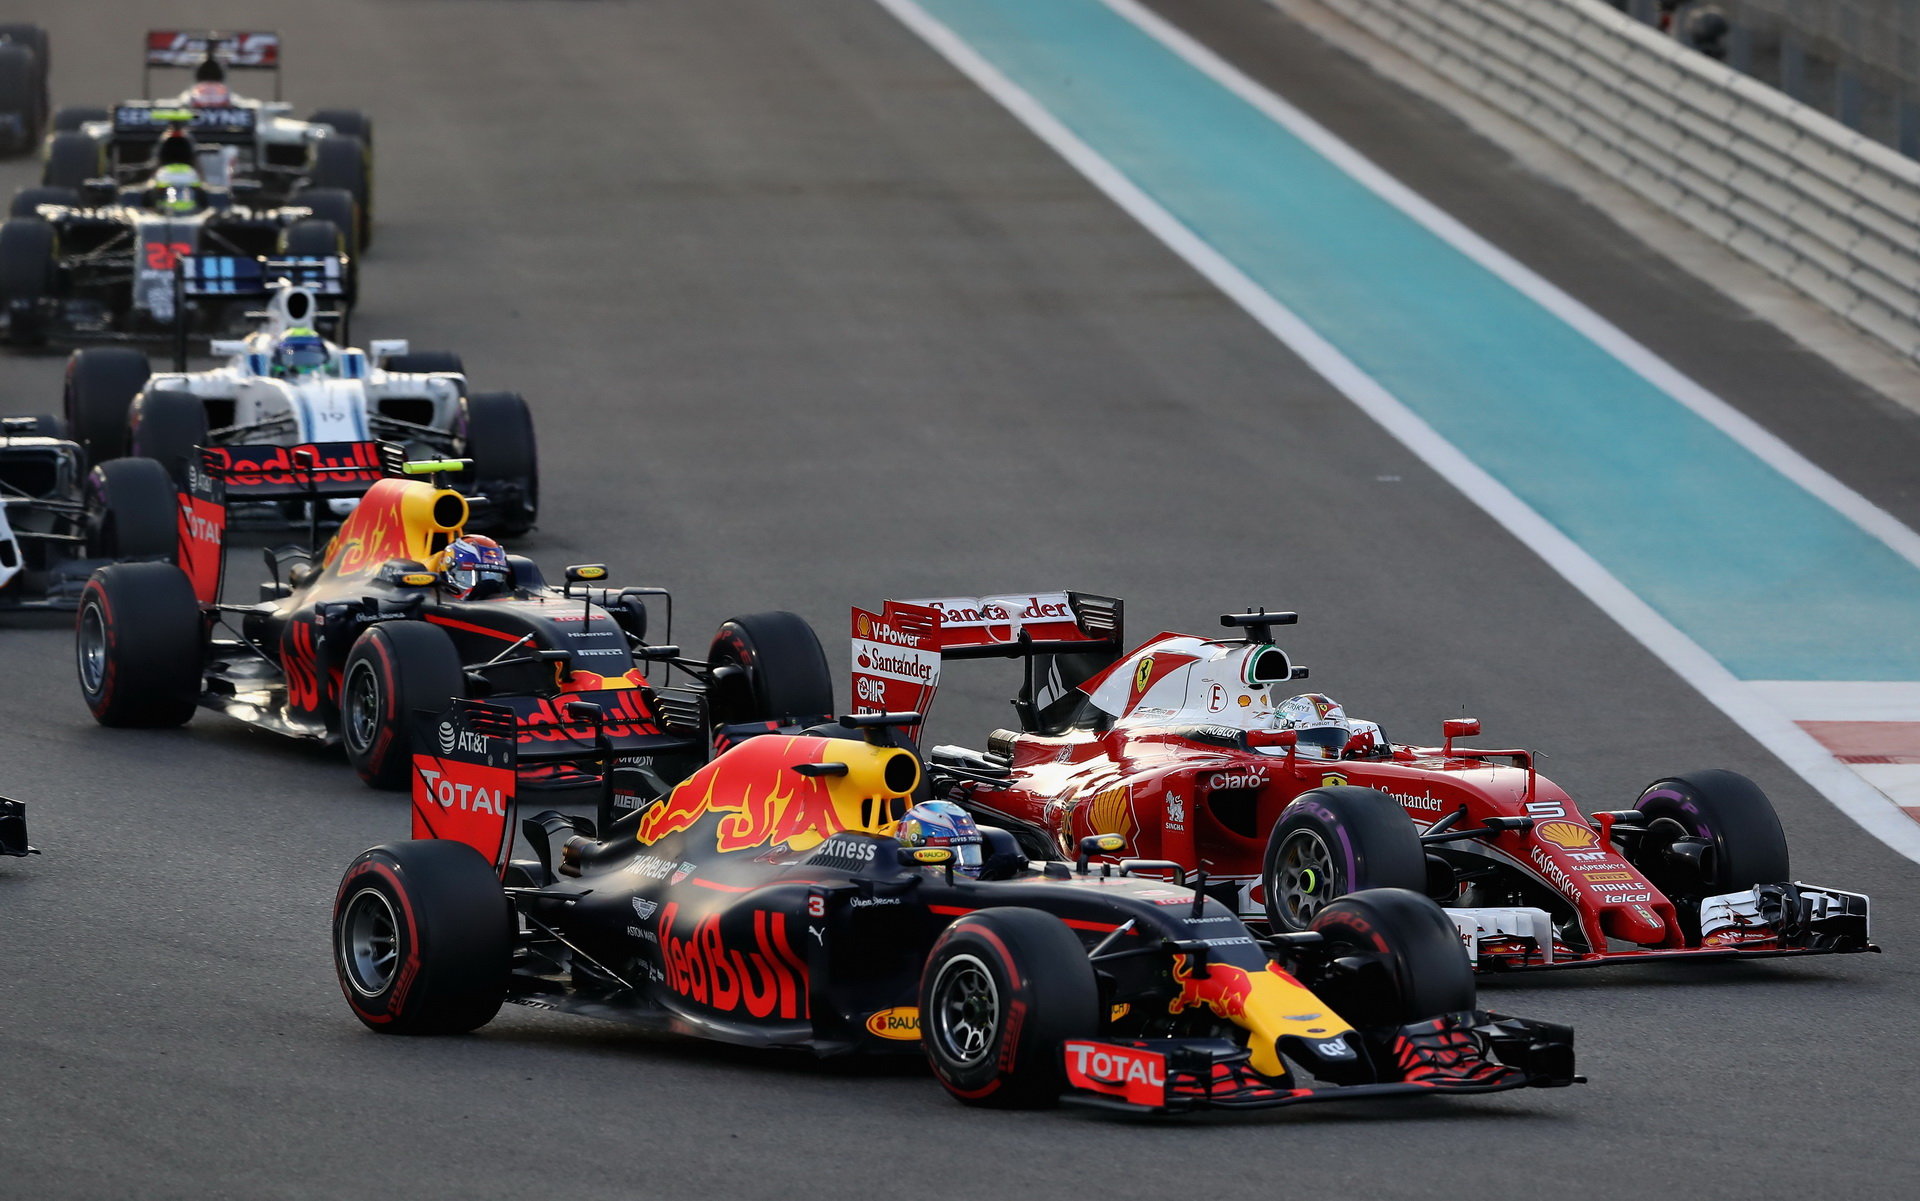 Daniel Ricciardo, Sebastian Vettel a Max Verstappen při startu závodu v Abú Zabí